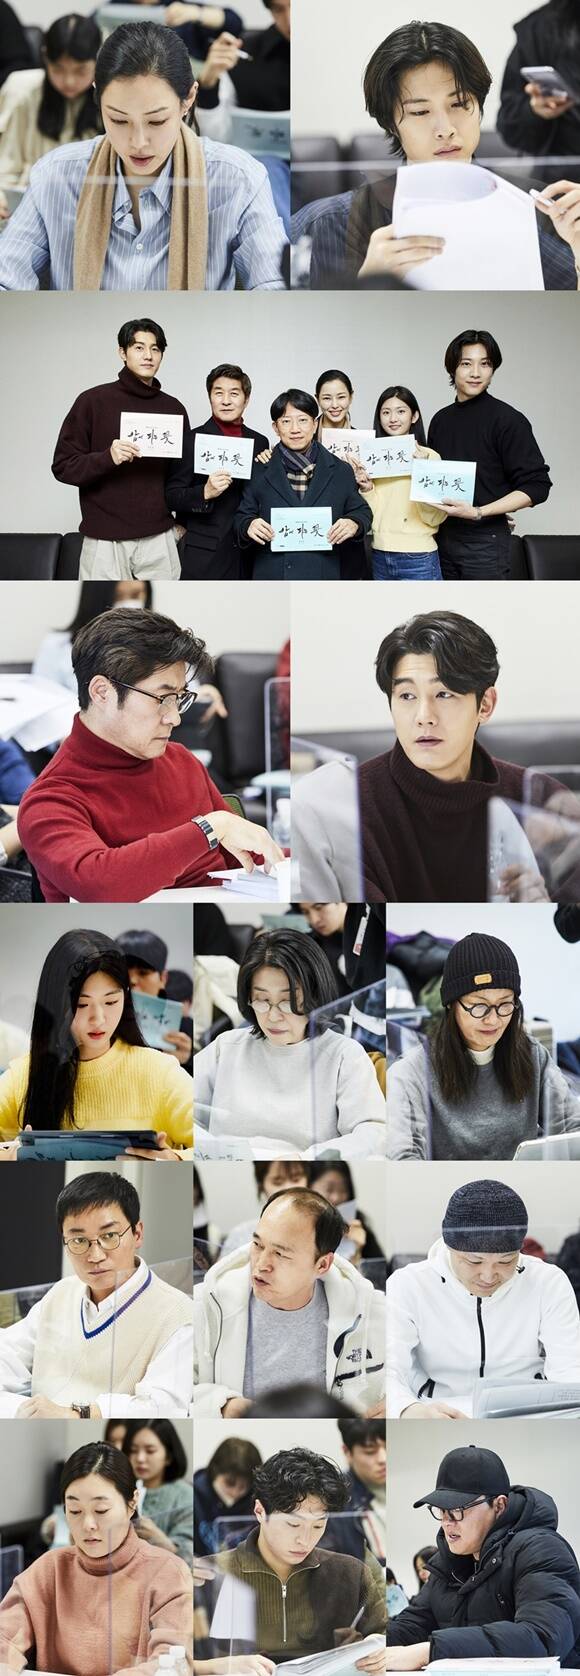 배우 이하늬 이종원(맨 위 좌우) 등이 출연하는 MBC 새 금토드라마 밤에 피는 꽃 대본 리딩 현장이 공개됐다. 작품은 내년 1월 12일 처음 방송된다. /MBC